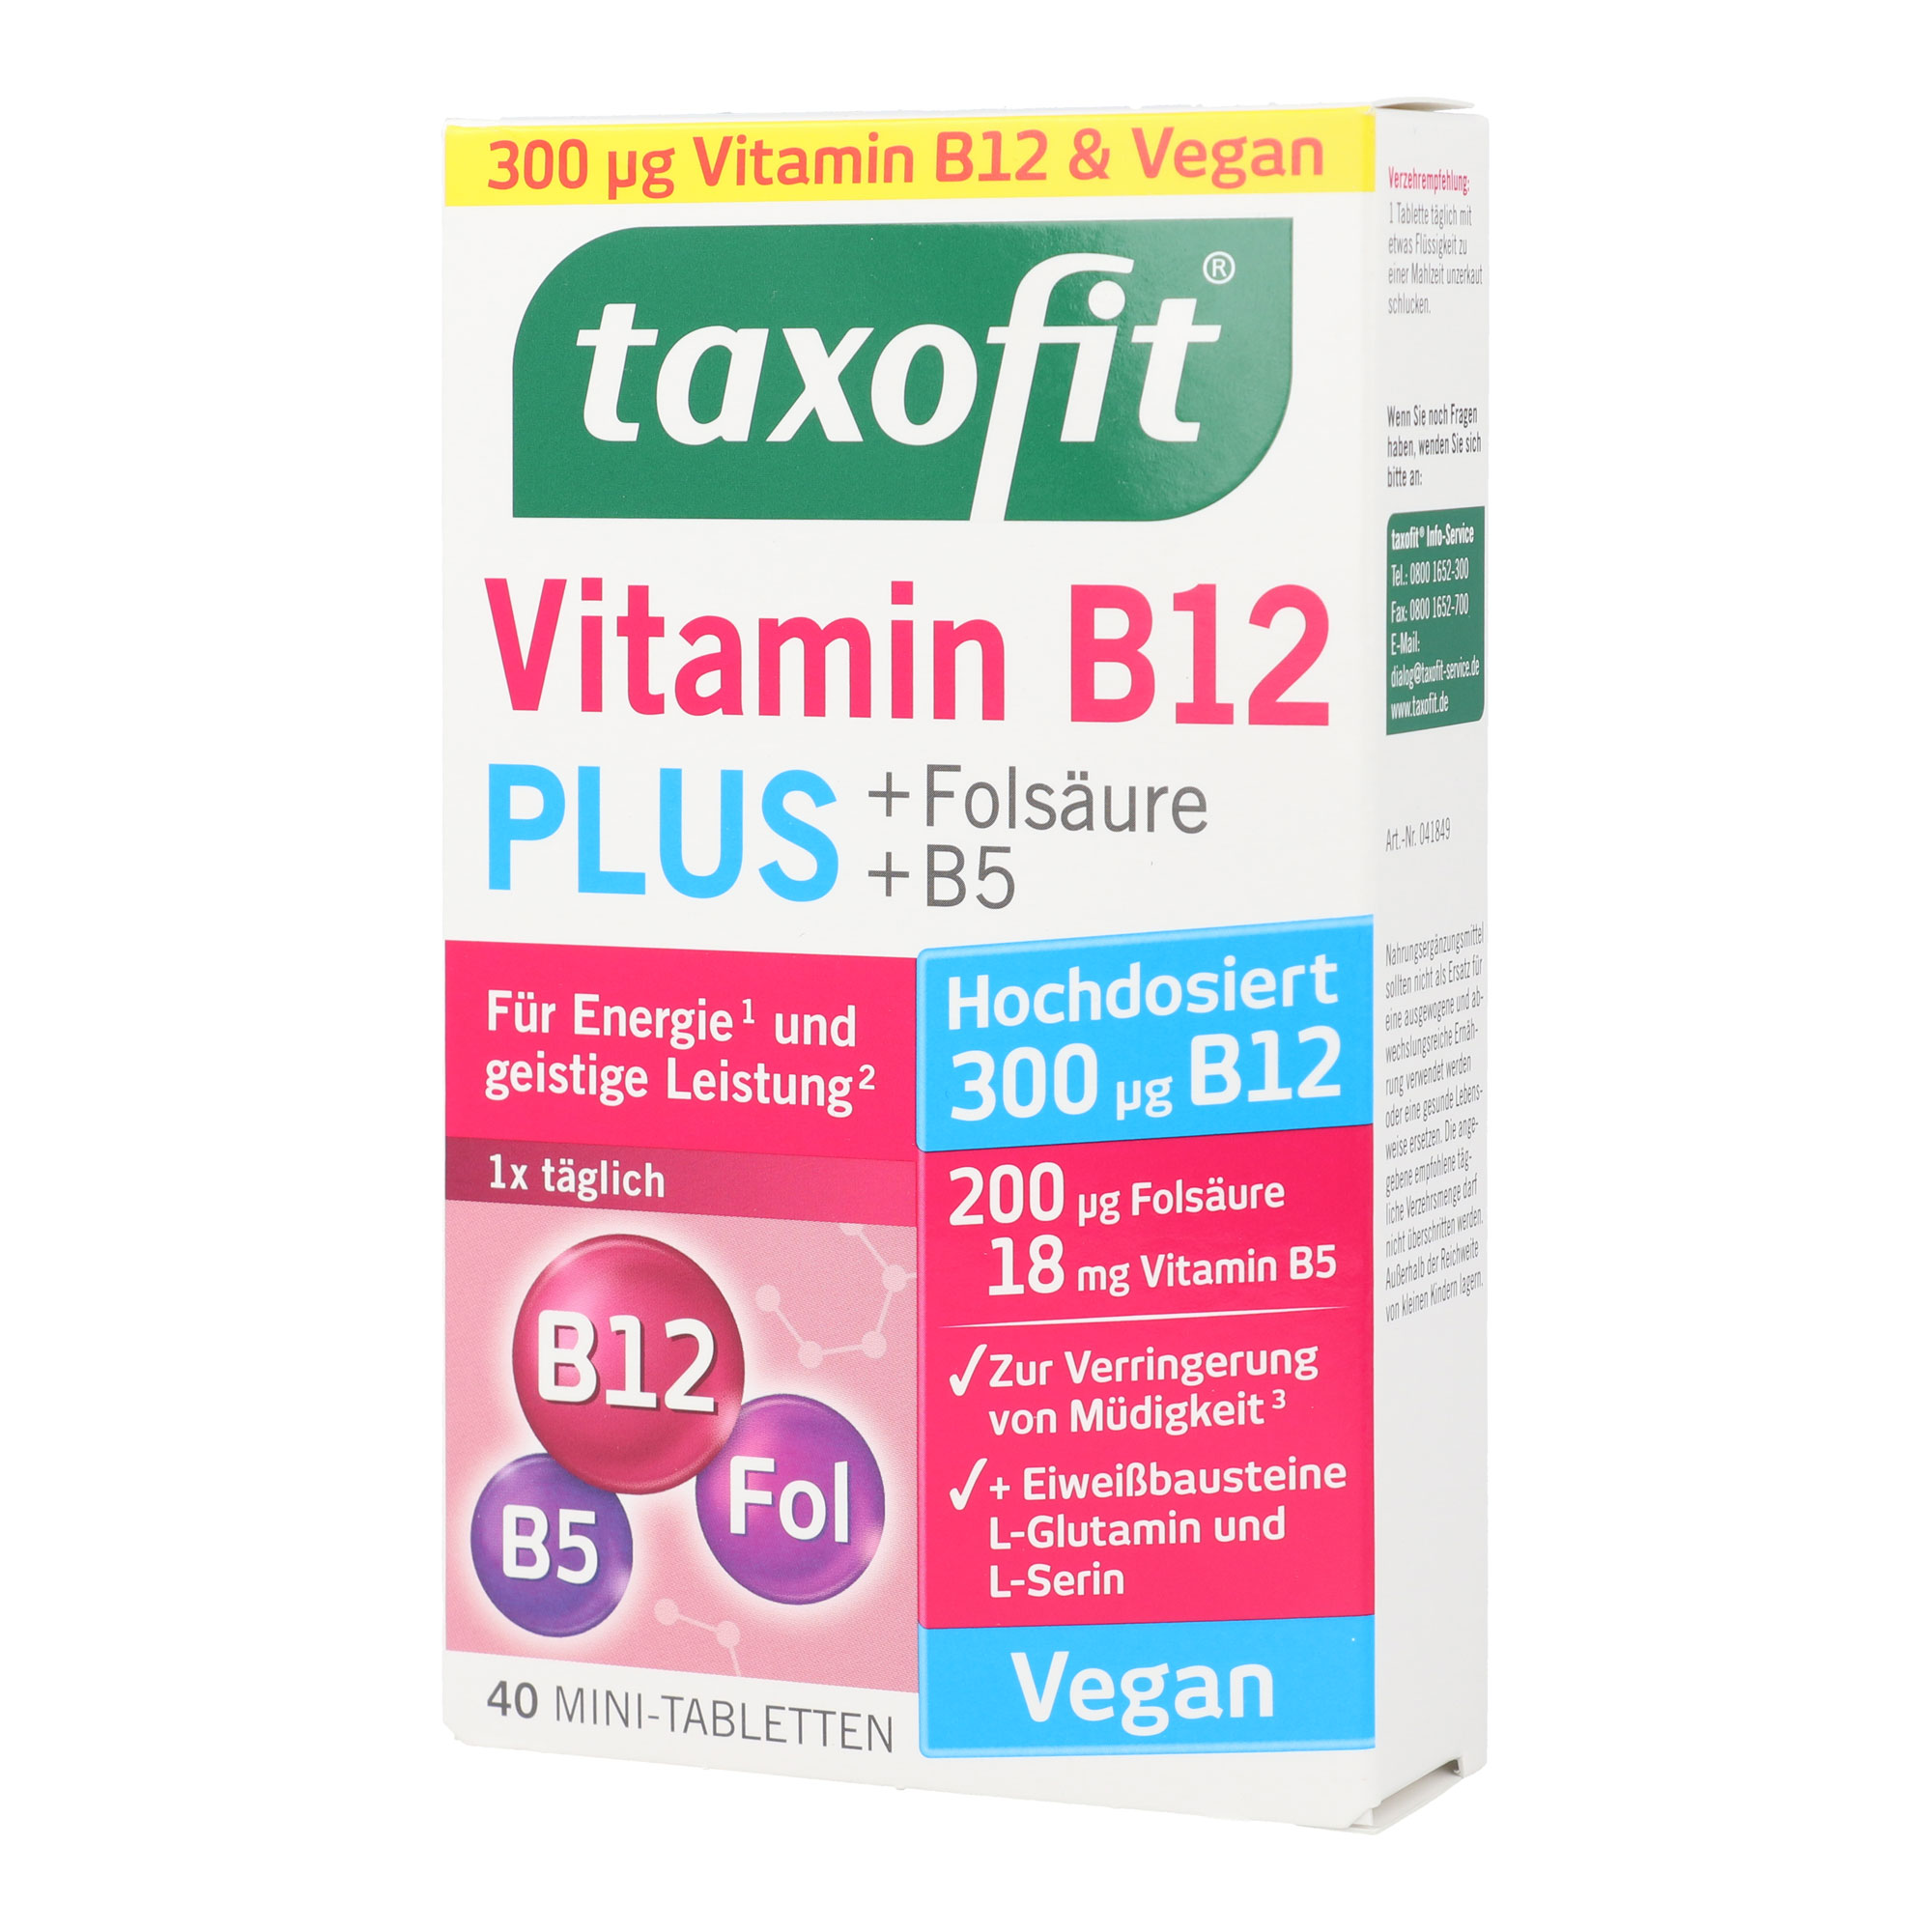 Nahrungsergänzungsmittel mit hochdosiertem Vitamin B12, Vitamin B5 und Folsäure.